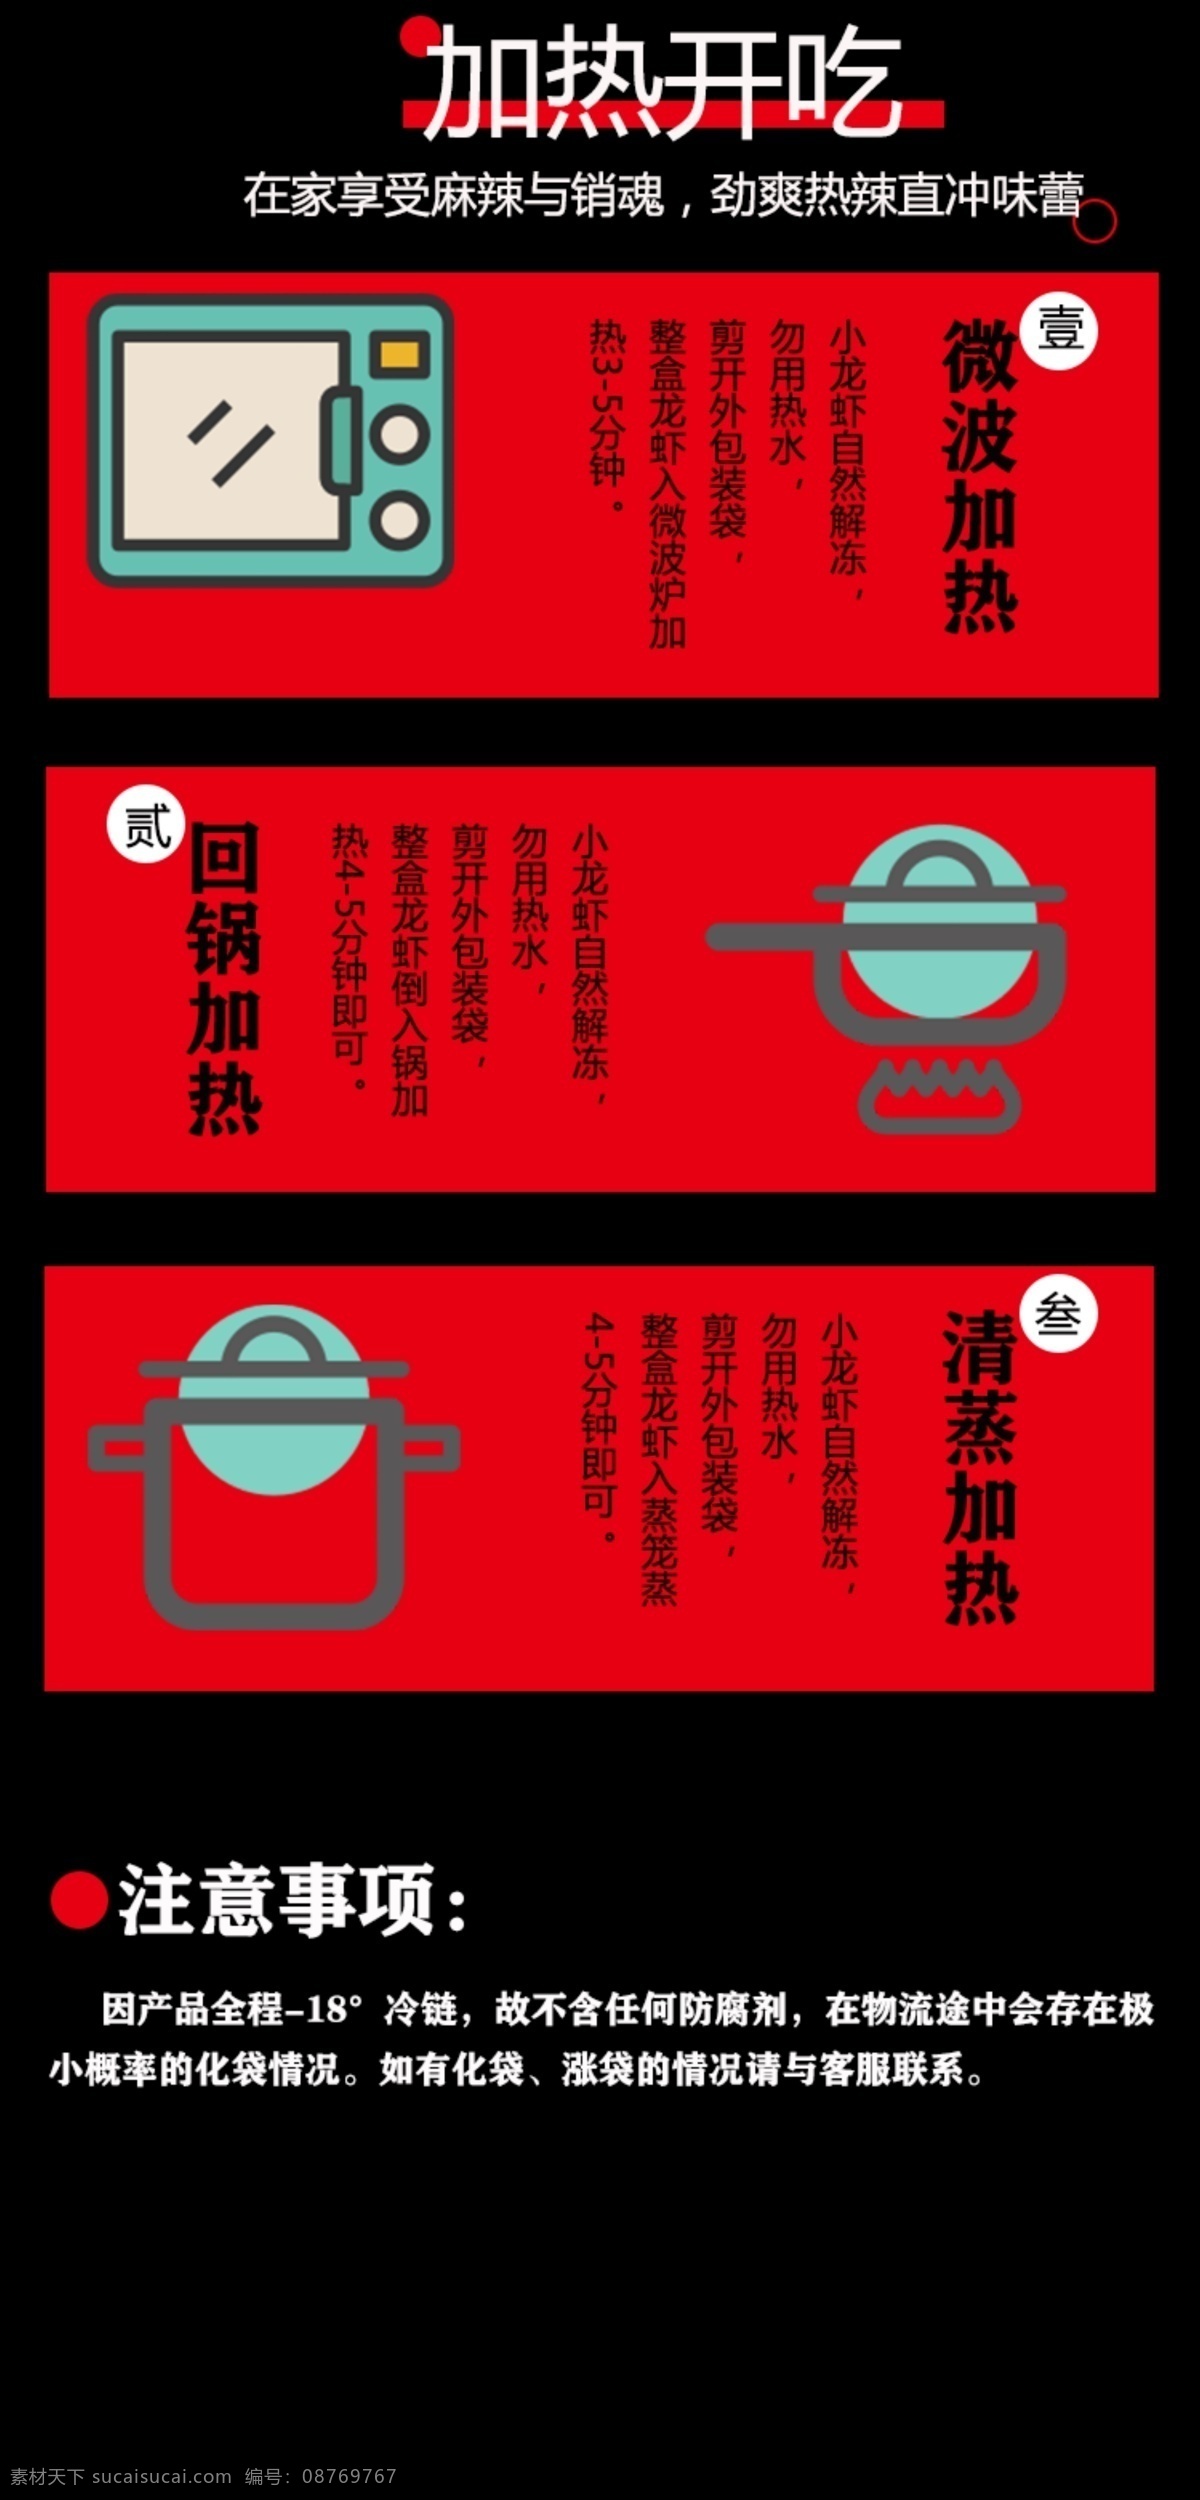 美 团 外卖 龙虾 海鲜 海报 美团 美食 淘宝界面设计 淘宝 广告 banner